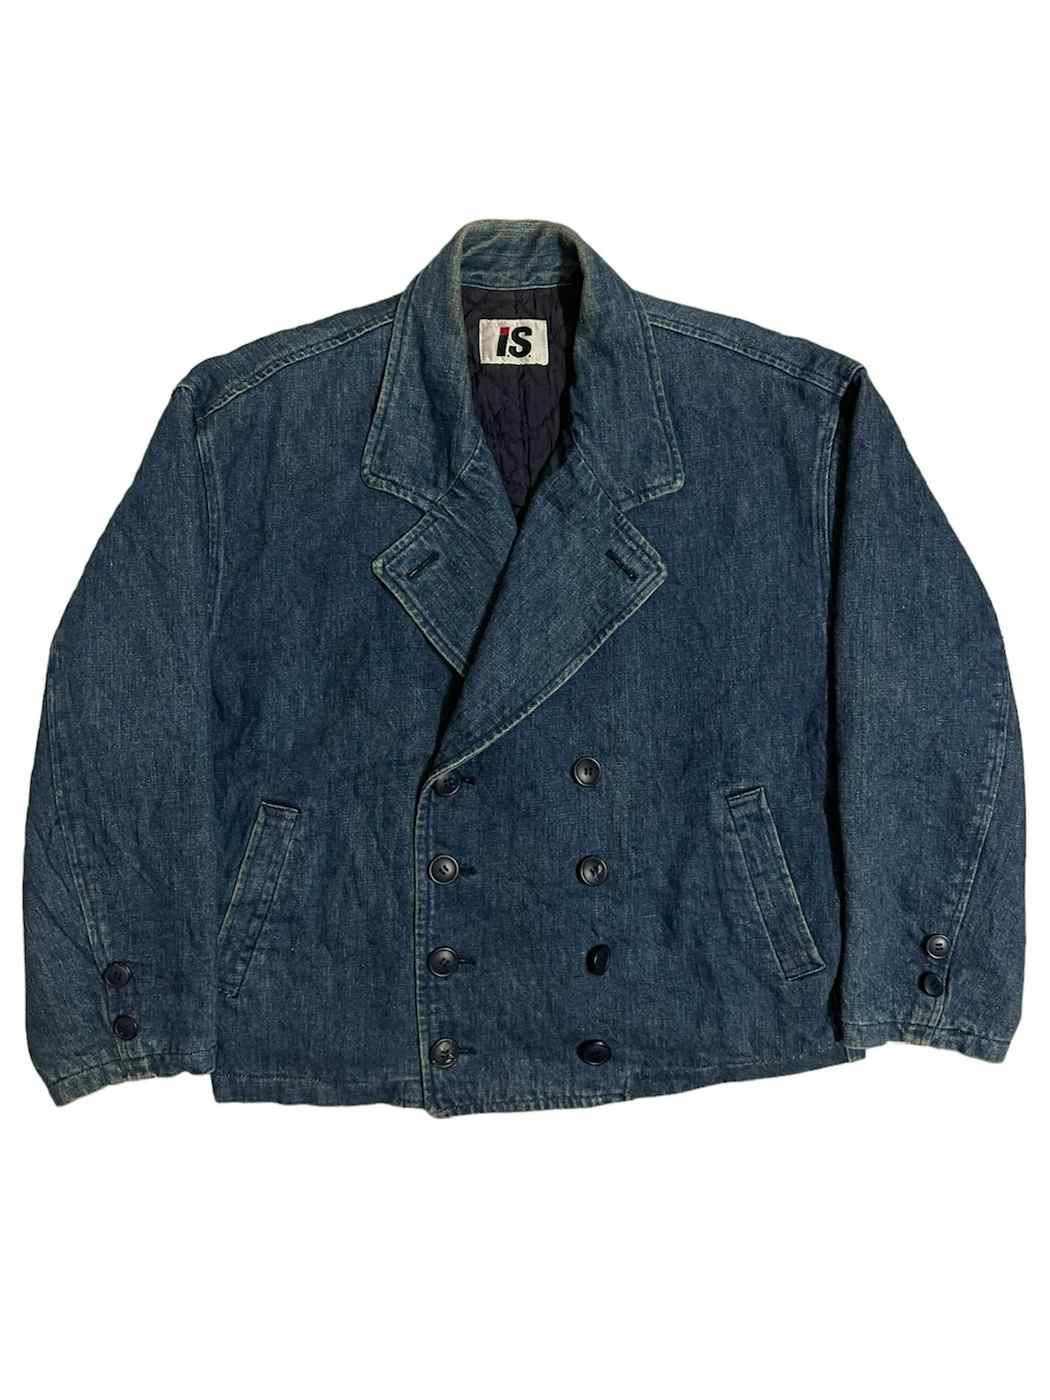 Pre-owned Issey Miyake X Vintage Issey Miyake (i.s) Denim Jacket Very Hard To Find